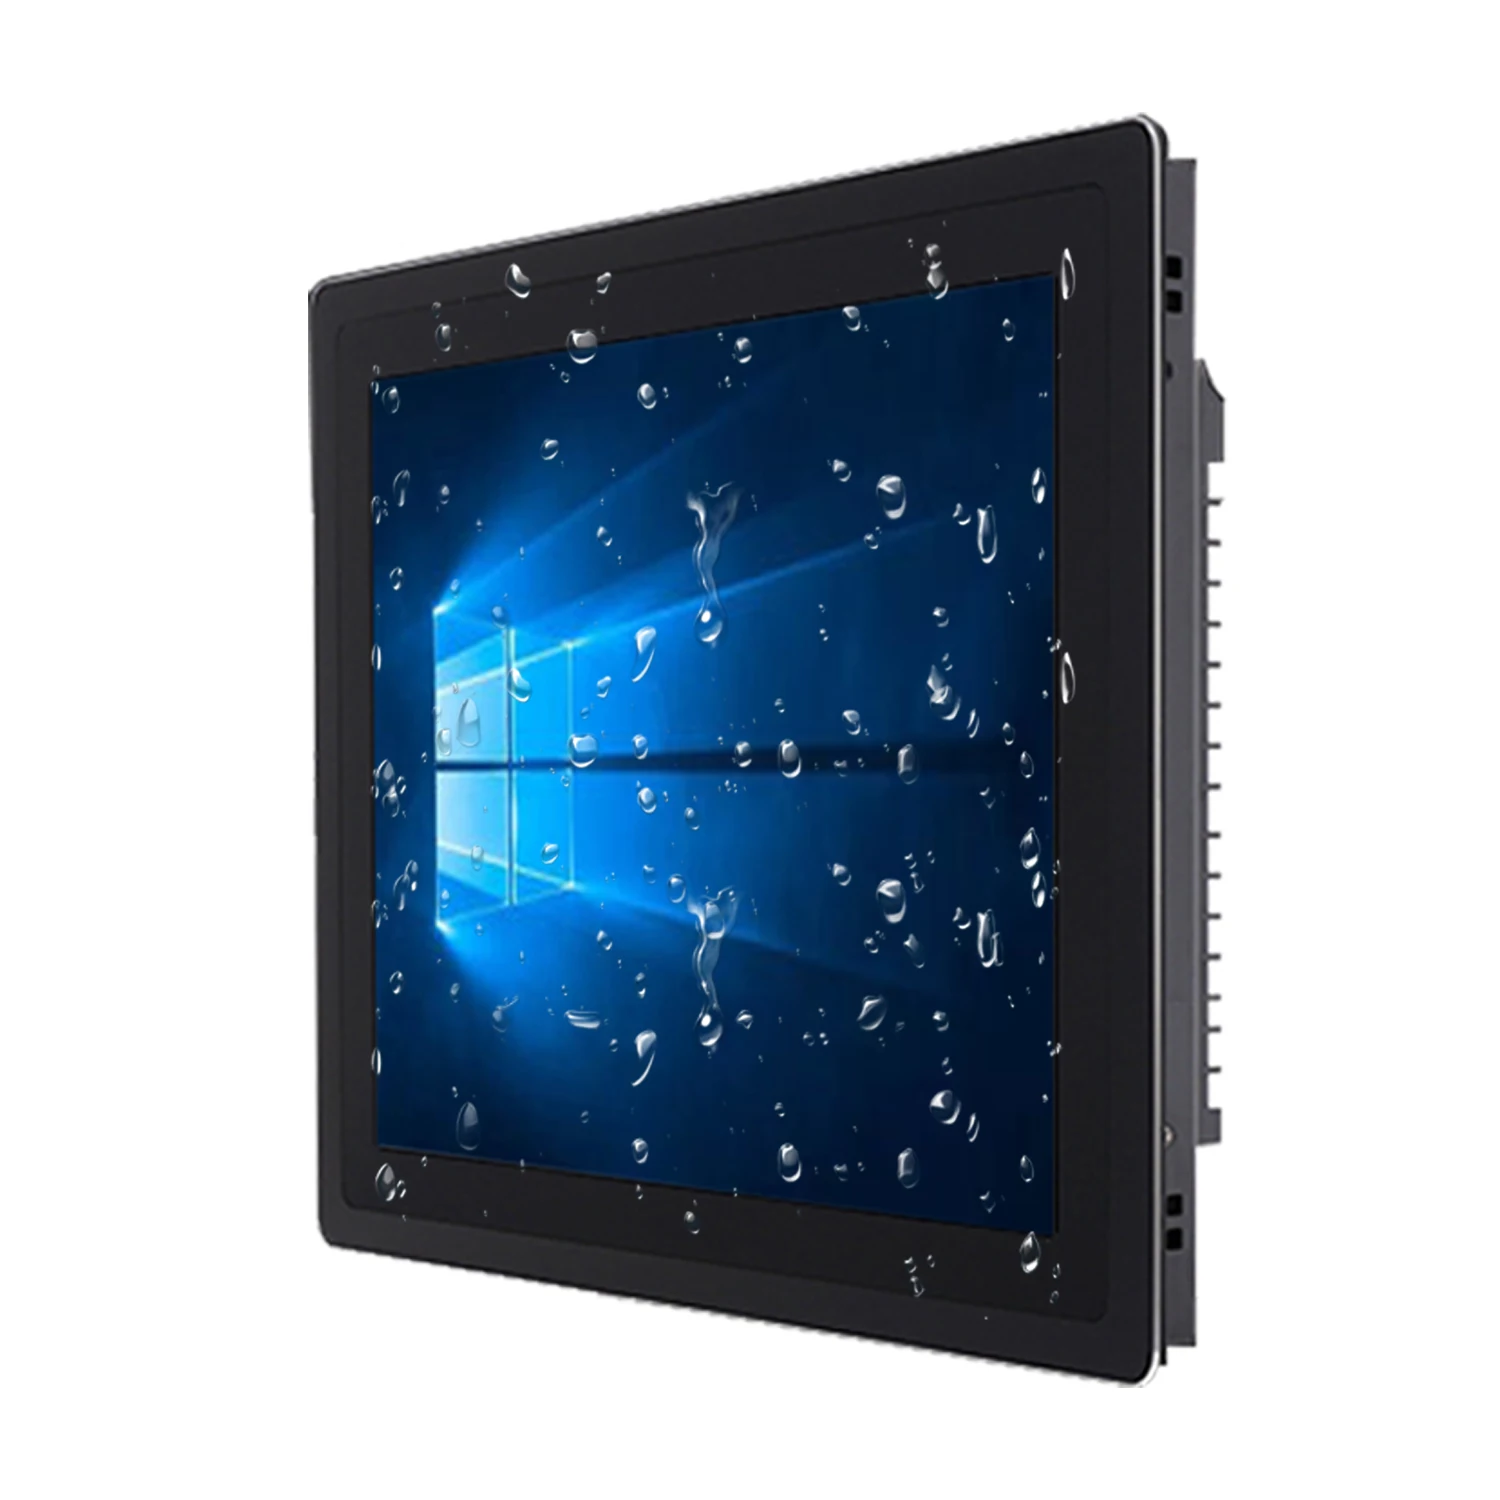 12.1 אינץ מוטבע תעשייתי All-in-one מחשב מסך מגע קיבולי Tablet Core i7-3537U עם WiFi COM RS232 Win10 PRO